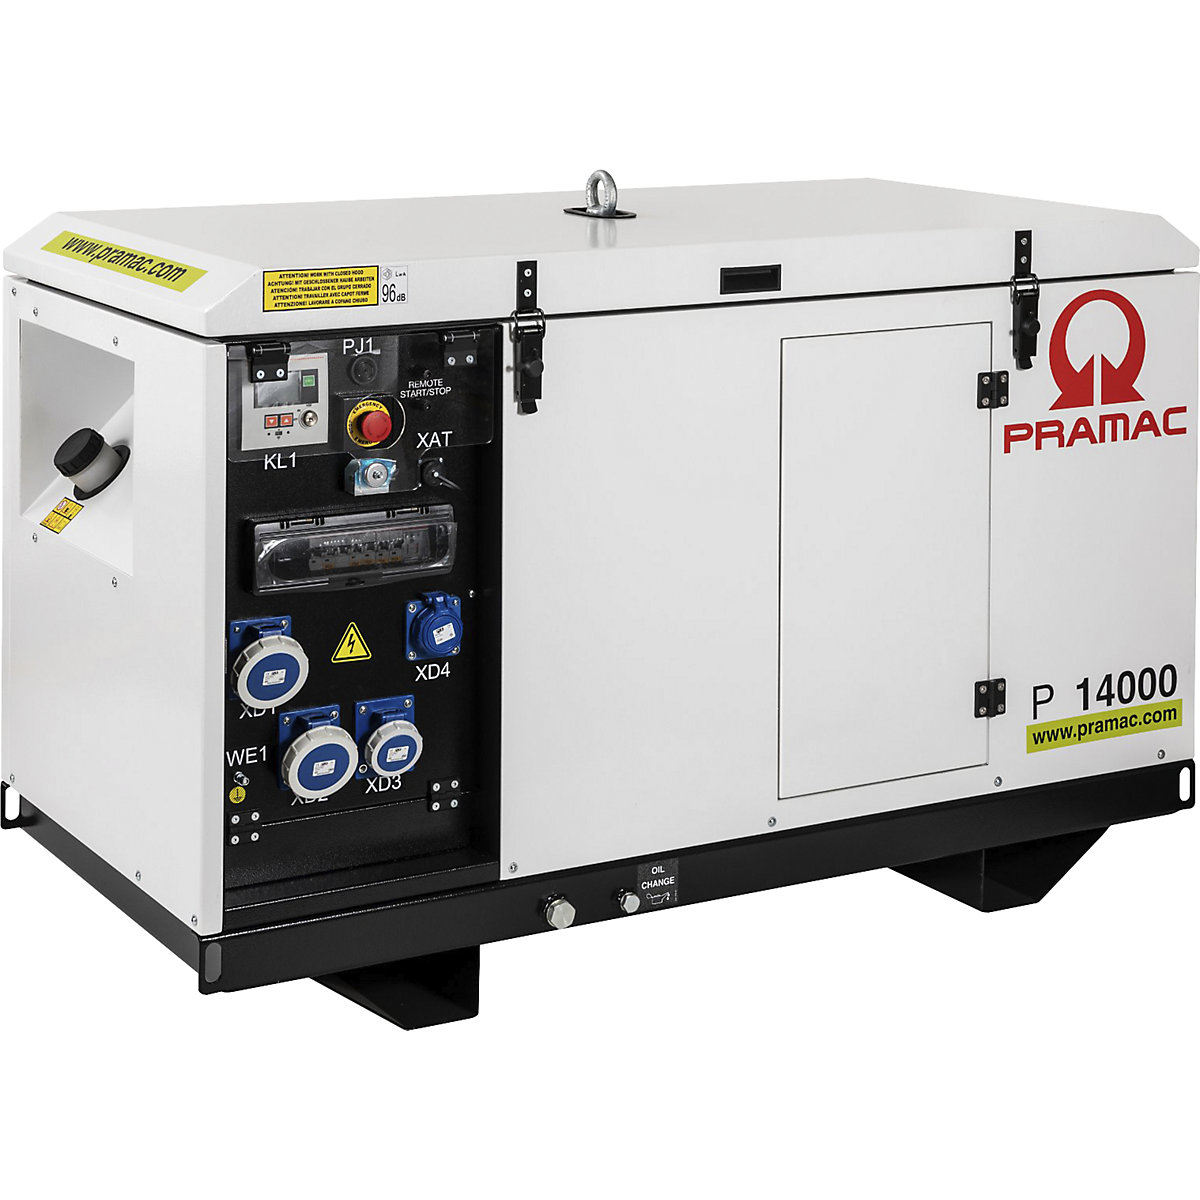 Generatore di corrente serie P, diesel, 400/230 V – Pramac